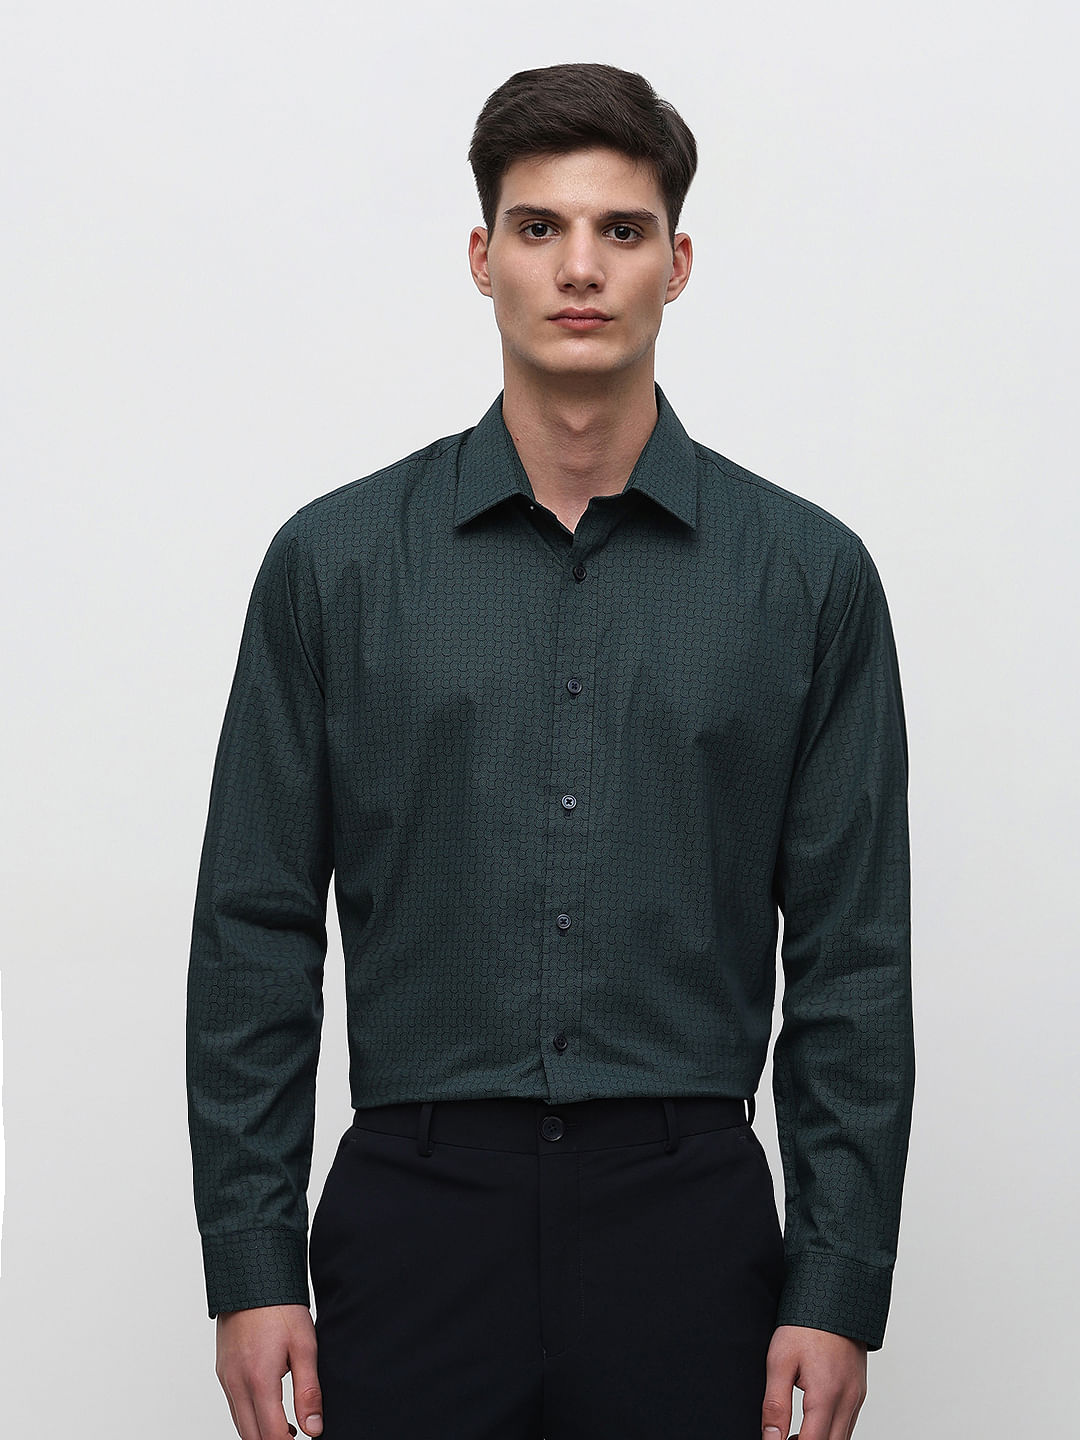 Buy Beige Shirts for Men by ZEAL Online | Ajio.com